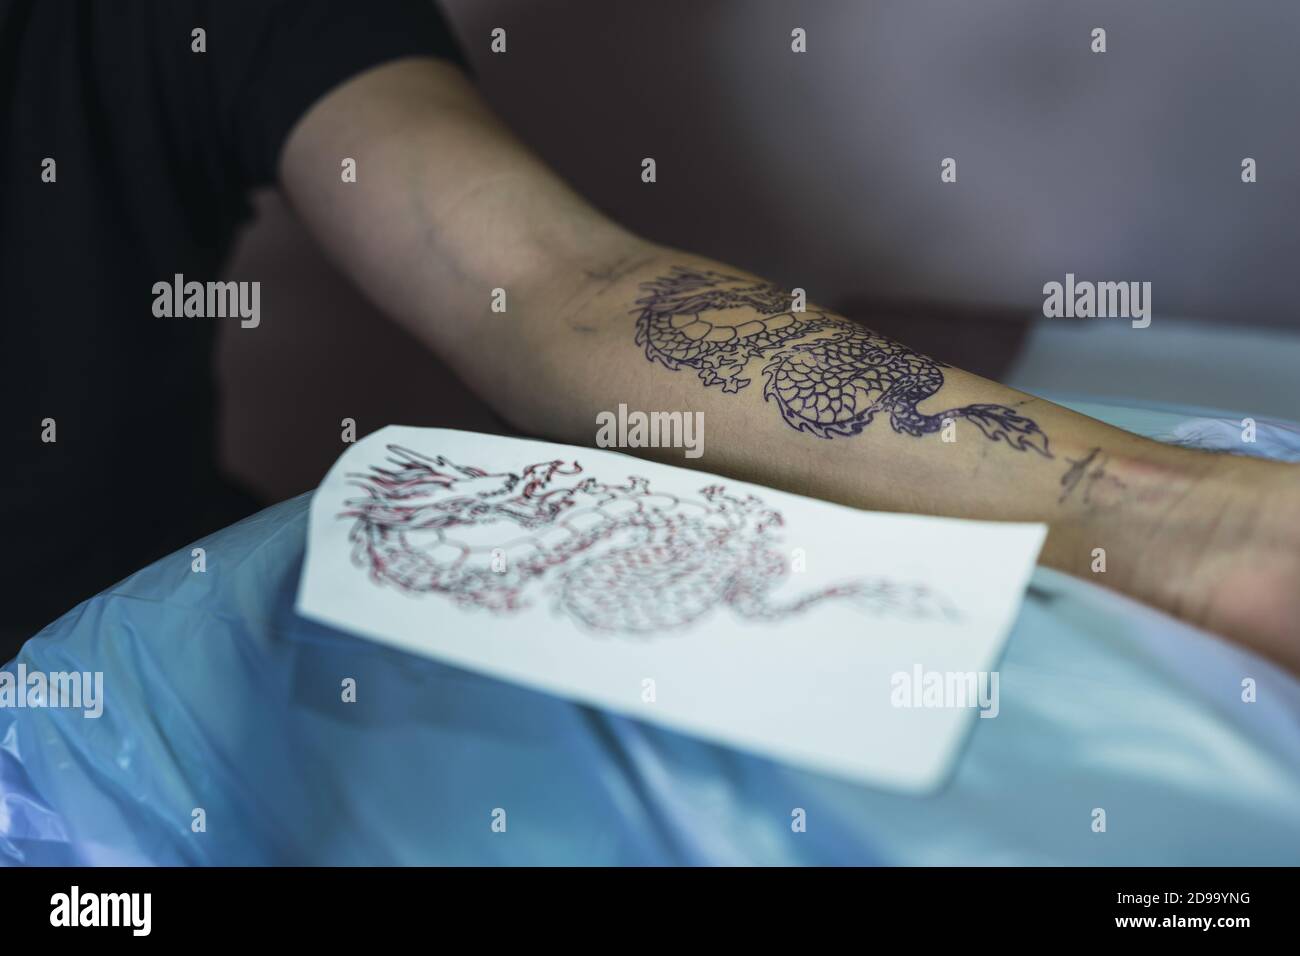 Artista Del Tatuaje Aplica Tatuaje Al Brazo. Ella Está Llenando De Tinta  Negra El Tatuaje. Fotos, retratos, imágenes y fotografía de archivo libres  de derecho. Image 183923979